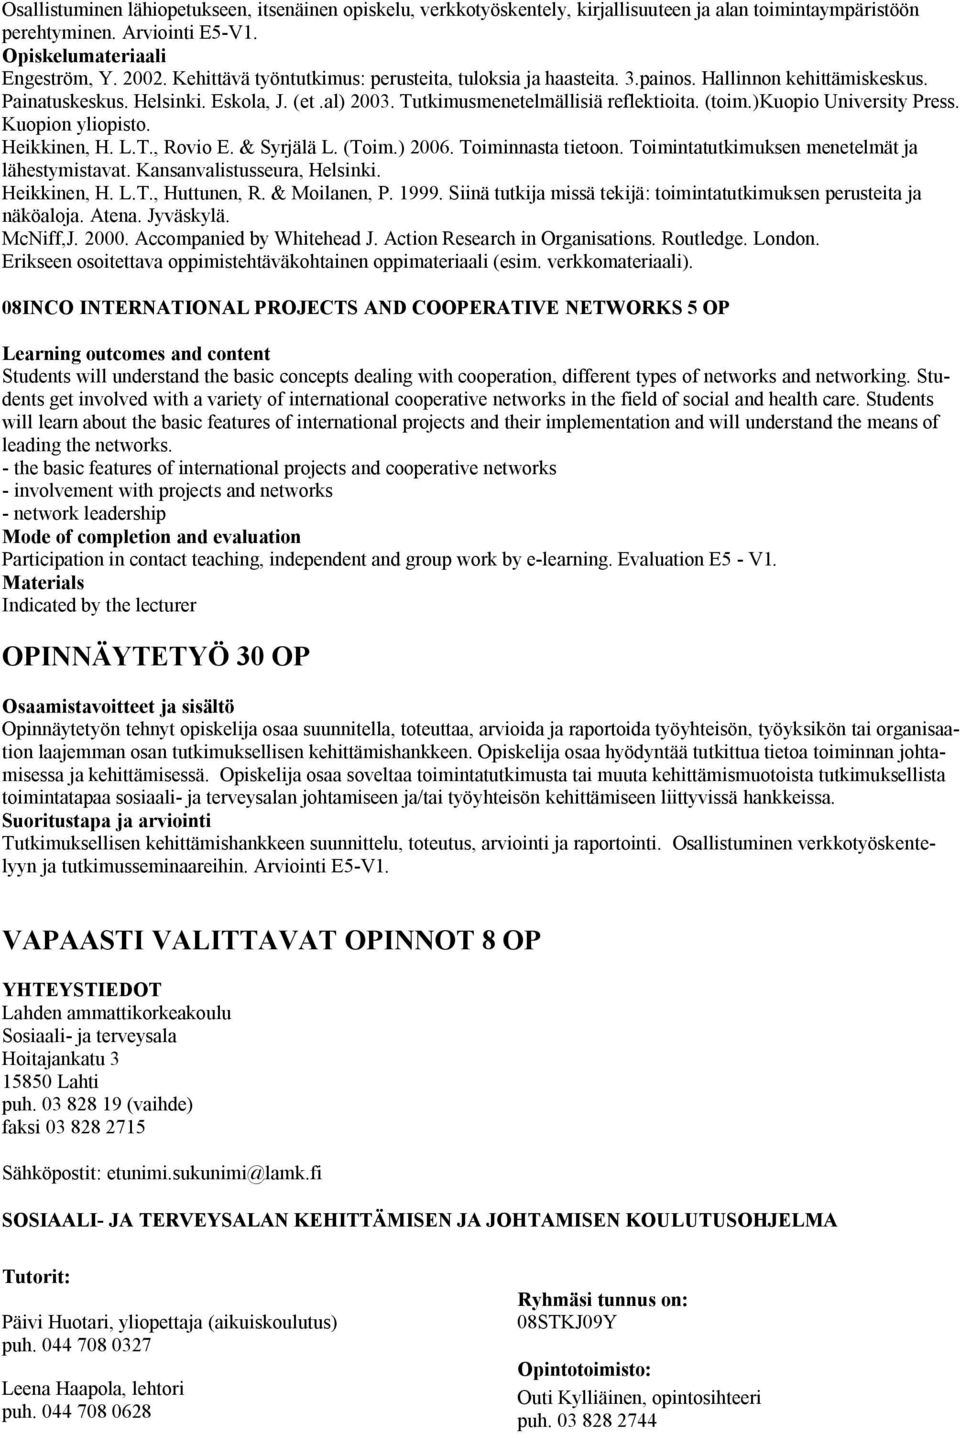 )kuopio University Press. Kuopion yliopisto. Heikkinen, H. L.T., Rovio E. & Syrjälä L. (Toim.) 2006. Toiminnasta tietoon. Toimintatutkimuksen menetelmät ja lähestymistavat.